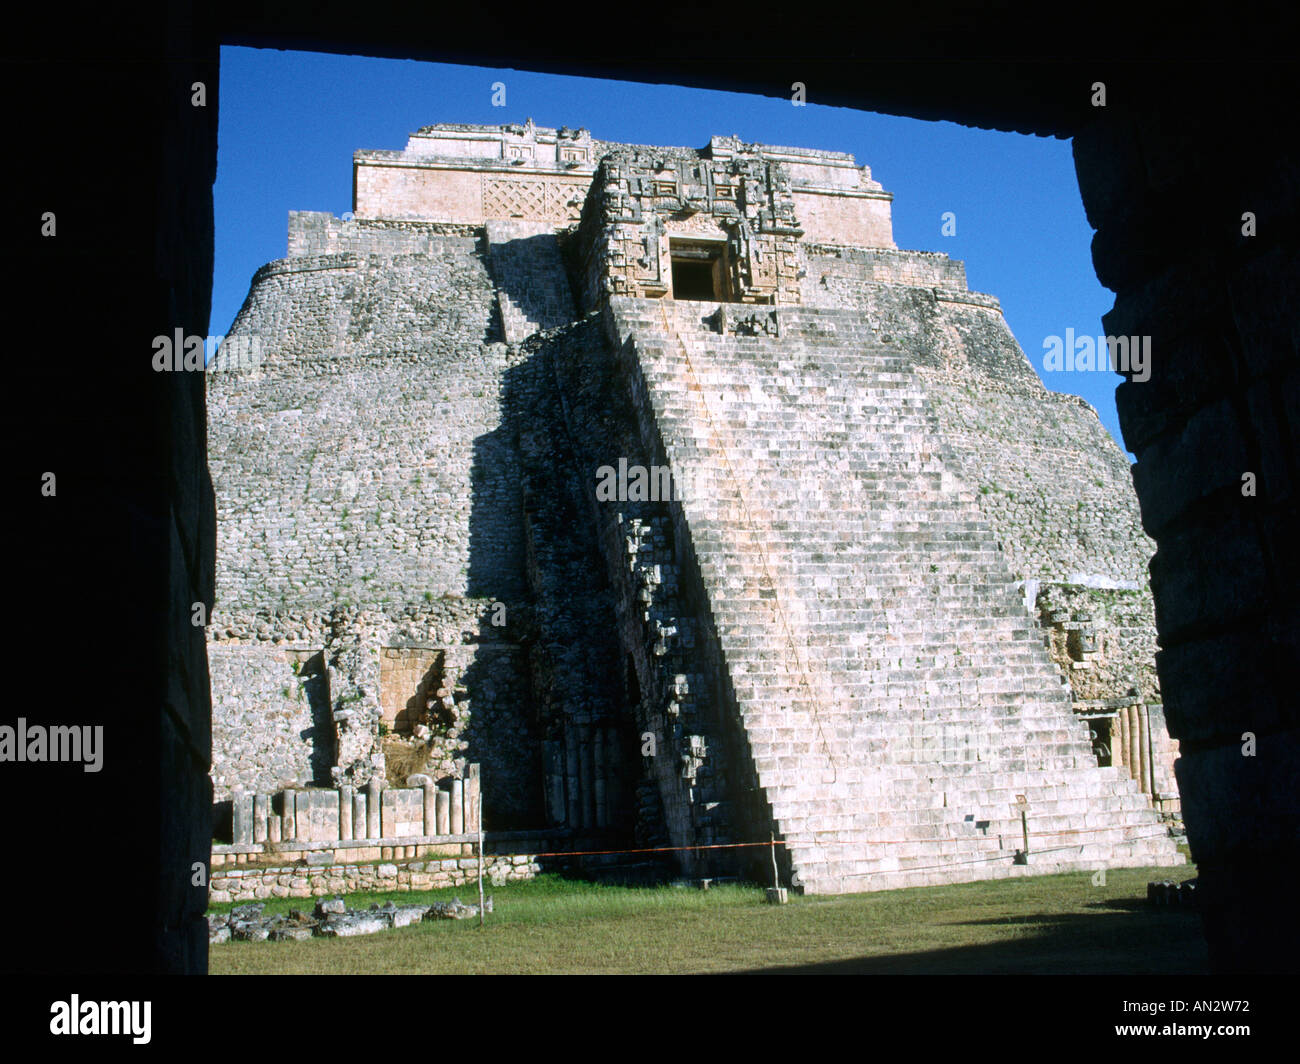 La pyramide du magicien, une partie de l'Uxmal ruines mayas dans l'état du Yucatan au Mexique. Banque D'Images